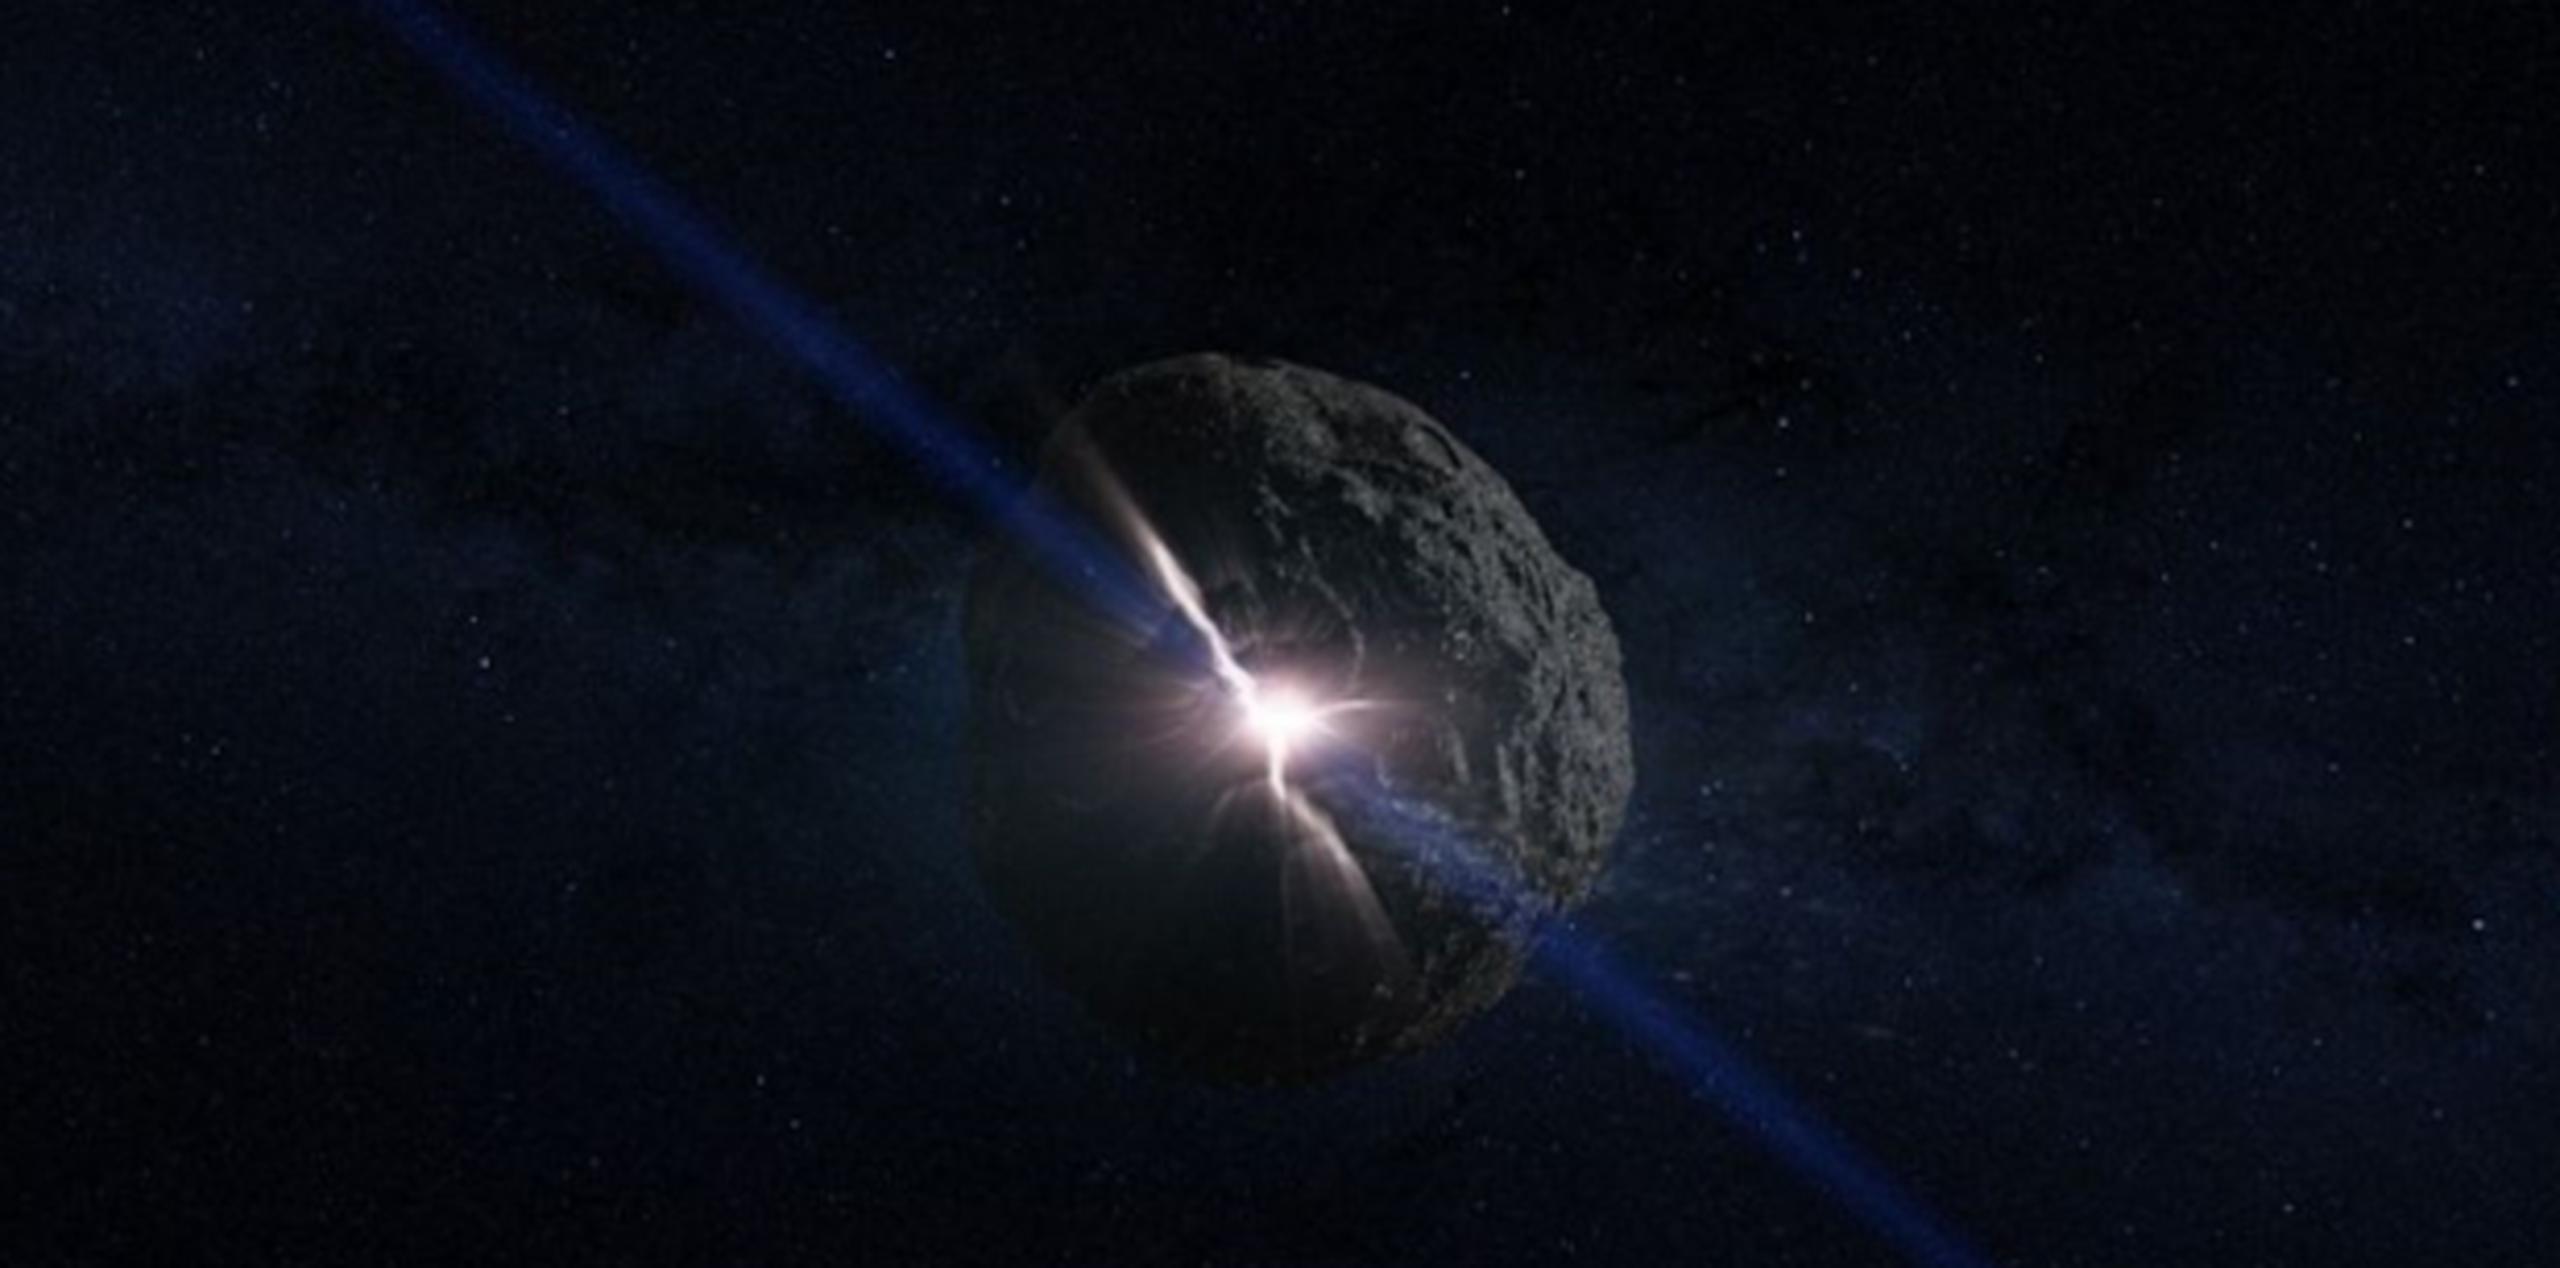 El asteroide, denominado Bennu, tendría consecuencias “terribles” para la Tierra, según los expertos. (NASA)